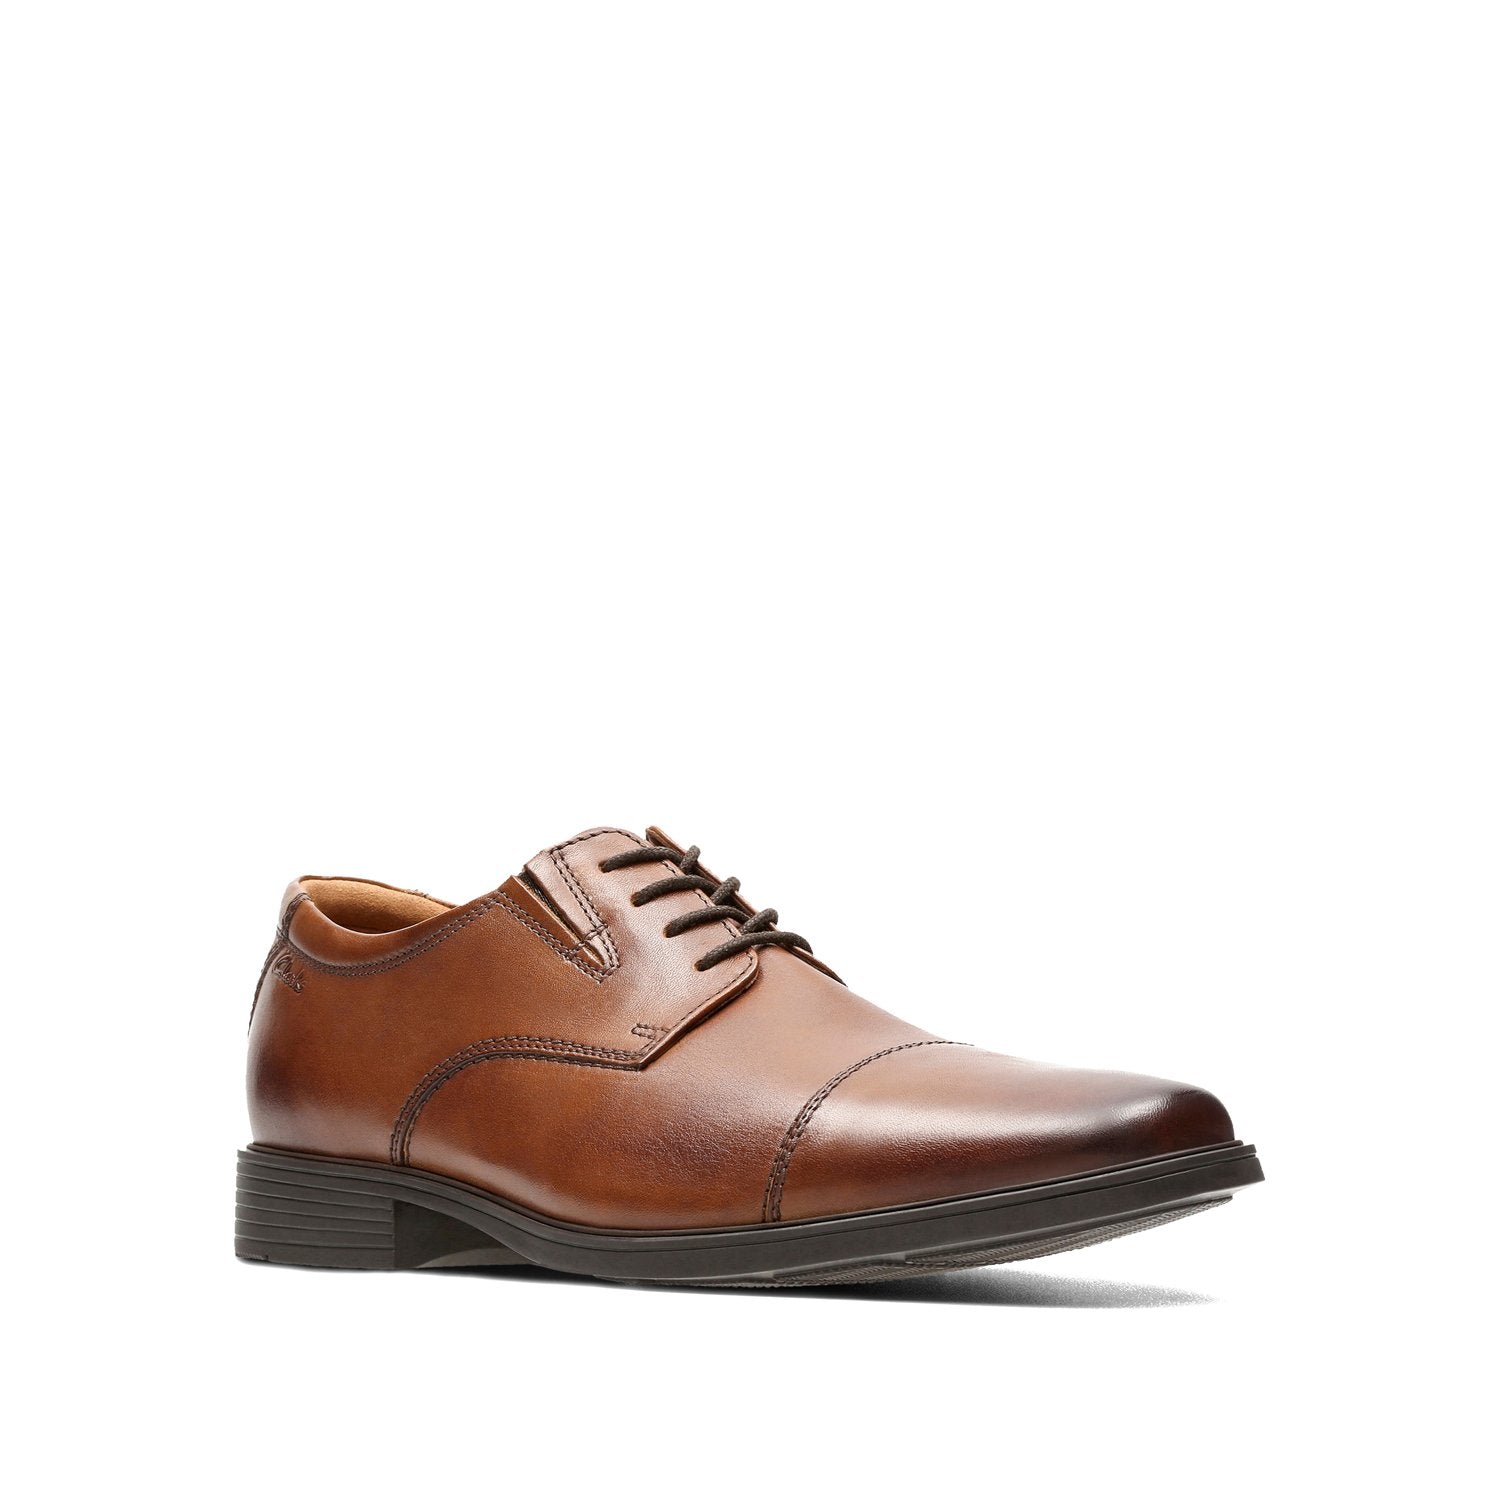 Clarks-Tilden-Cap-Men's-Shoes-Dark-Tan-Leather-26130096